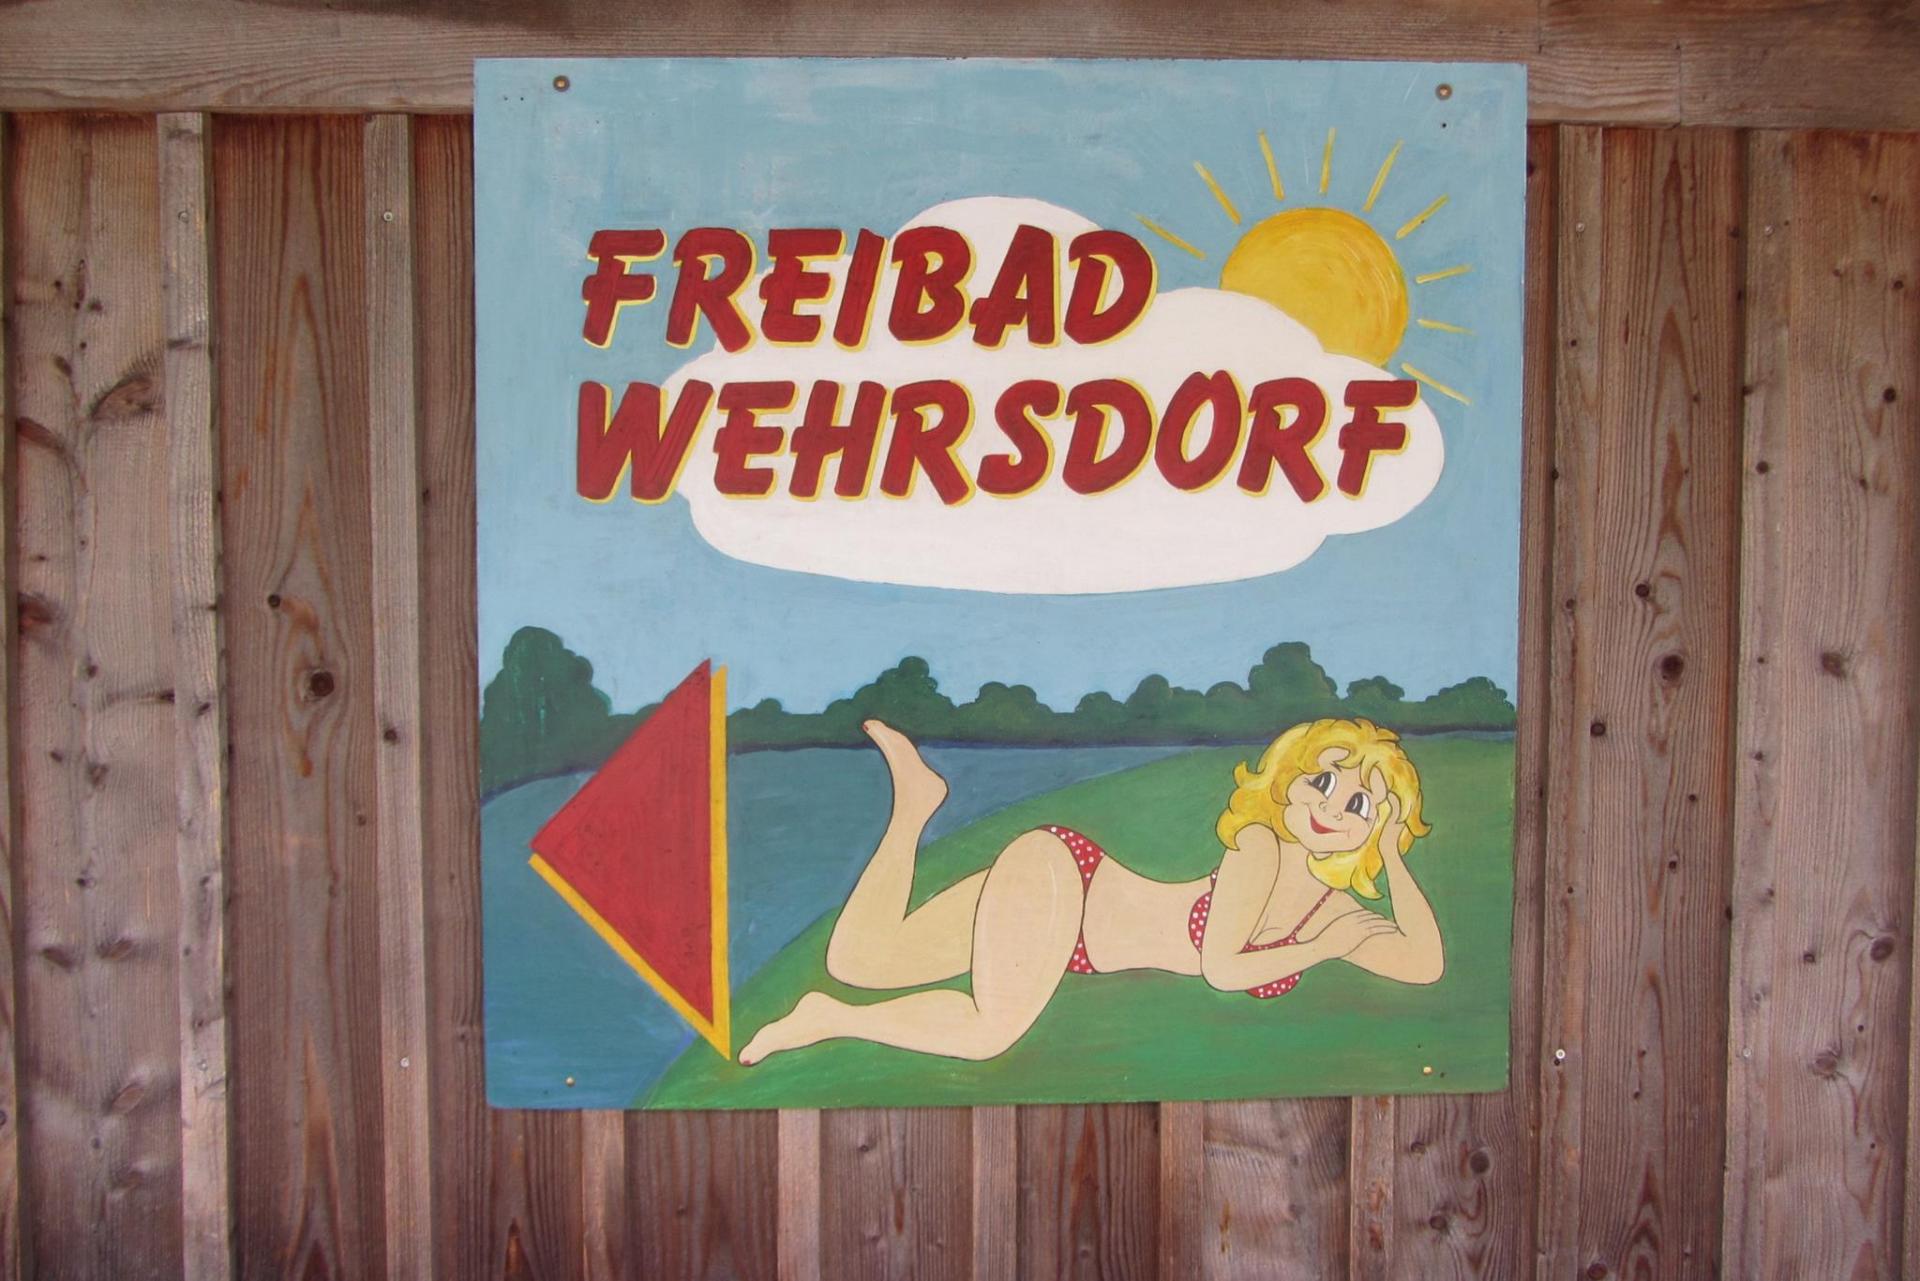 (c) Waldbad-wehrsdorf.de